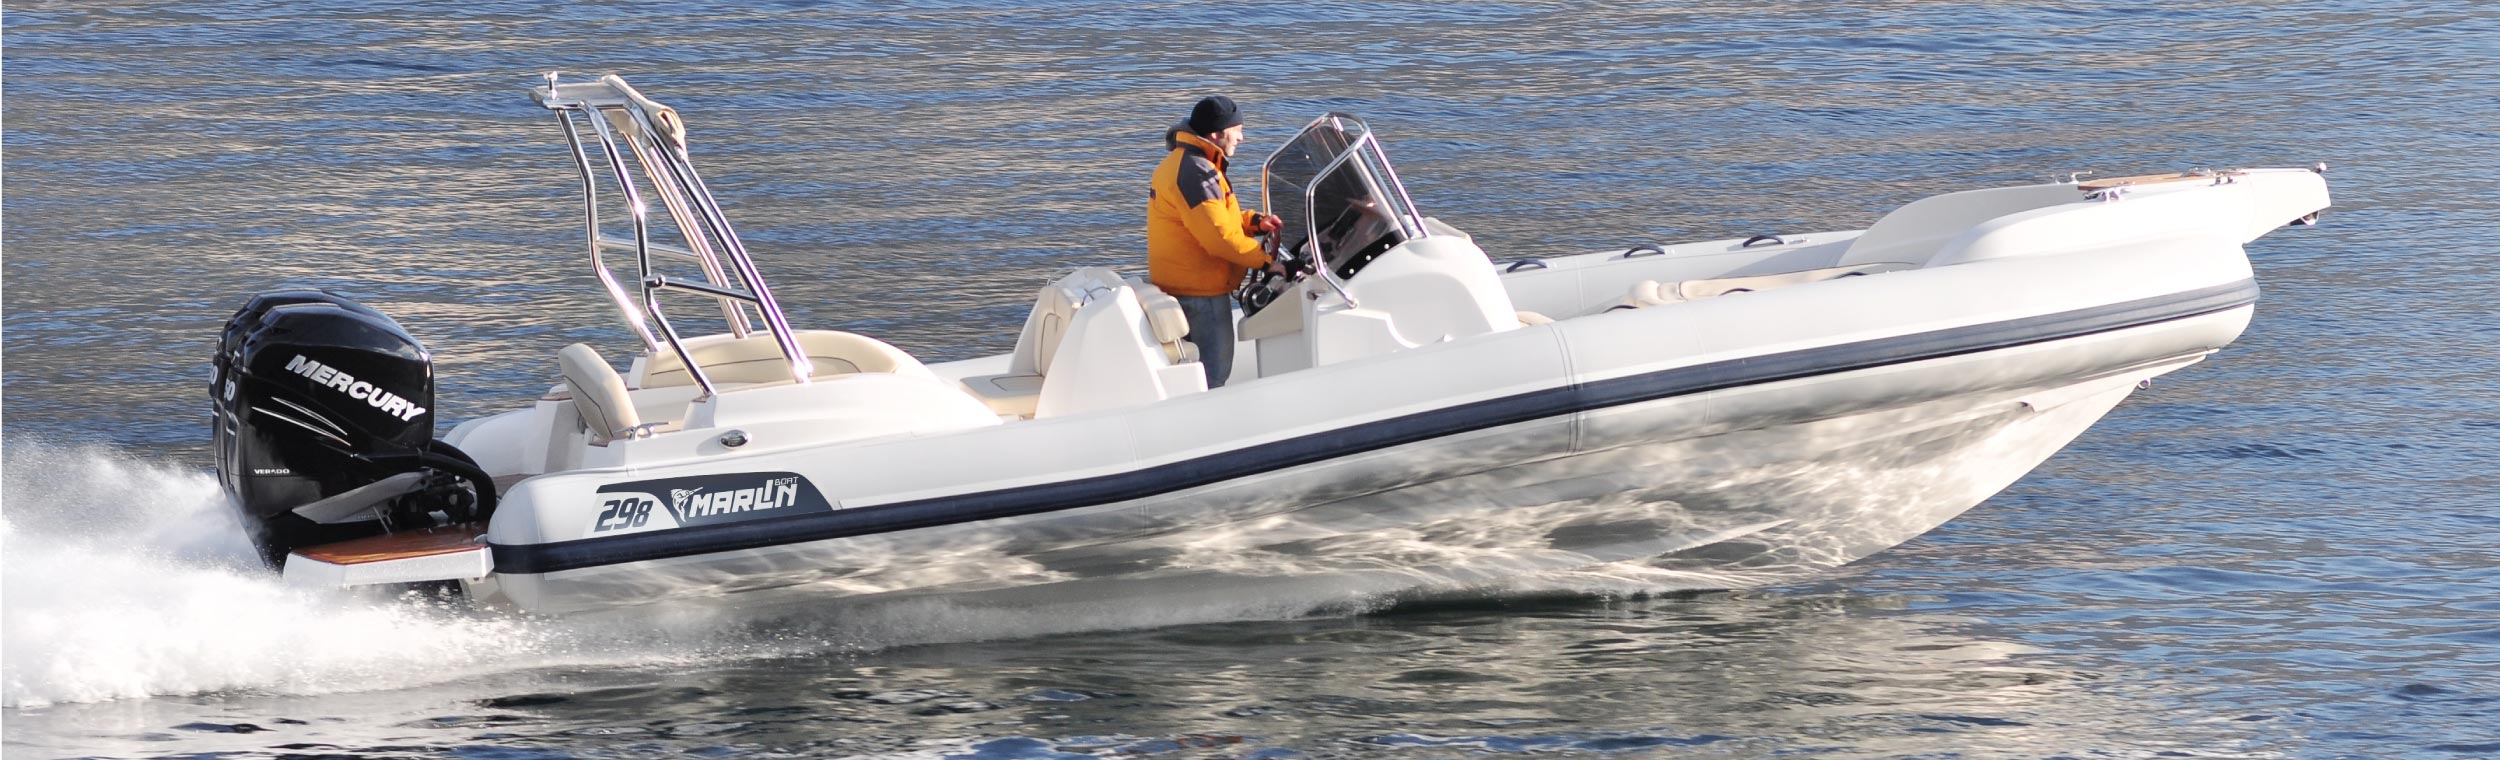 Marlin Boat - Gommone Fuoribordo Modello 298